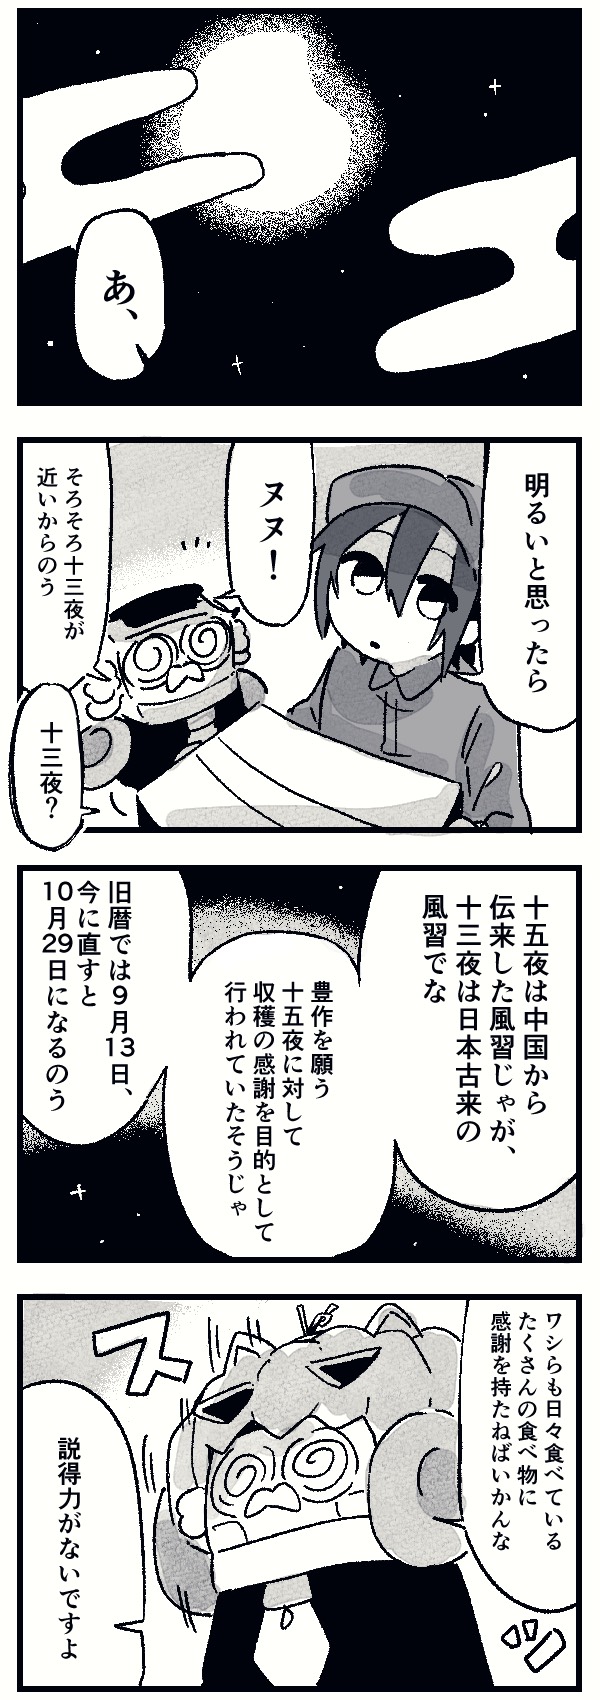 【ドラ博士 4コマ漫画#20】十三夜